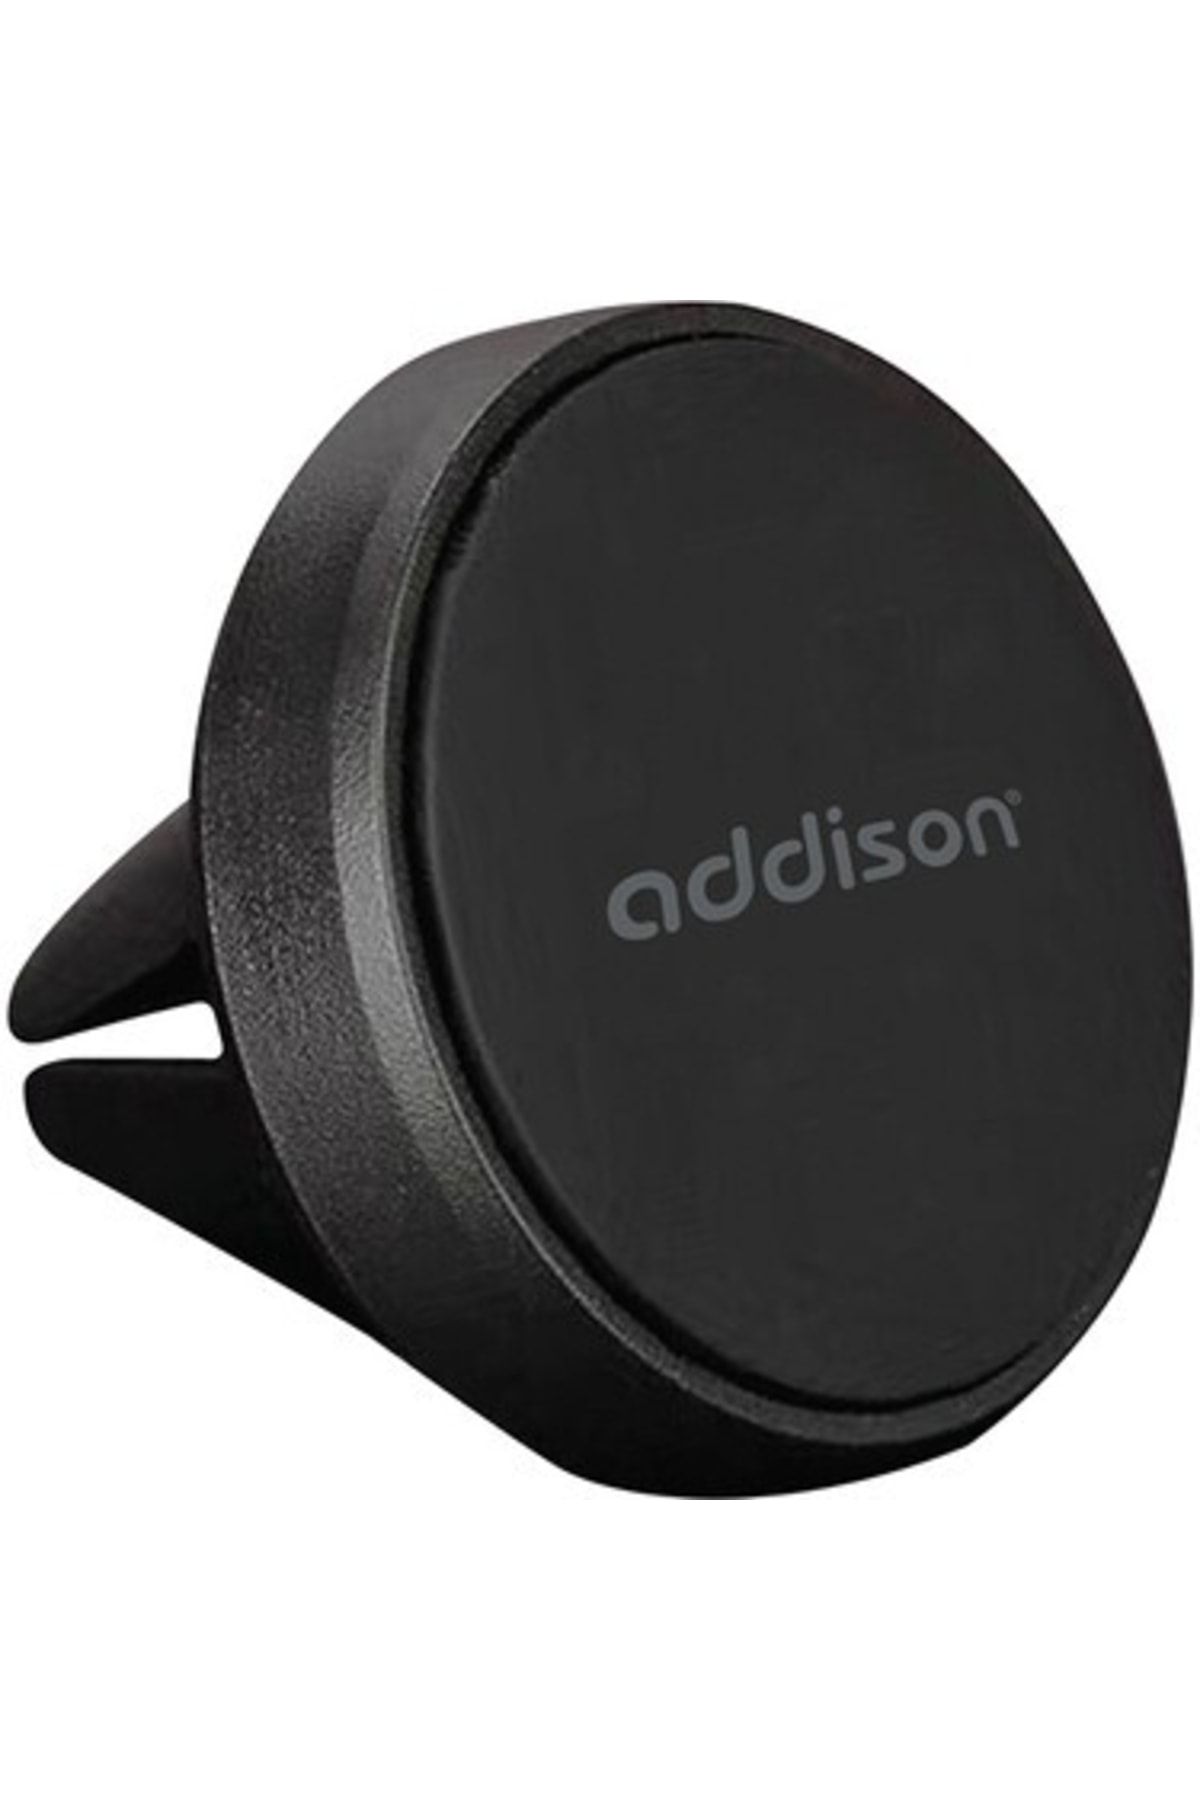 Addison Ads-116 Universal Ayarlanabilir Siyah Mıknatıslı Araç Telefon Tutucu